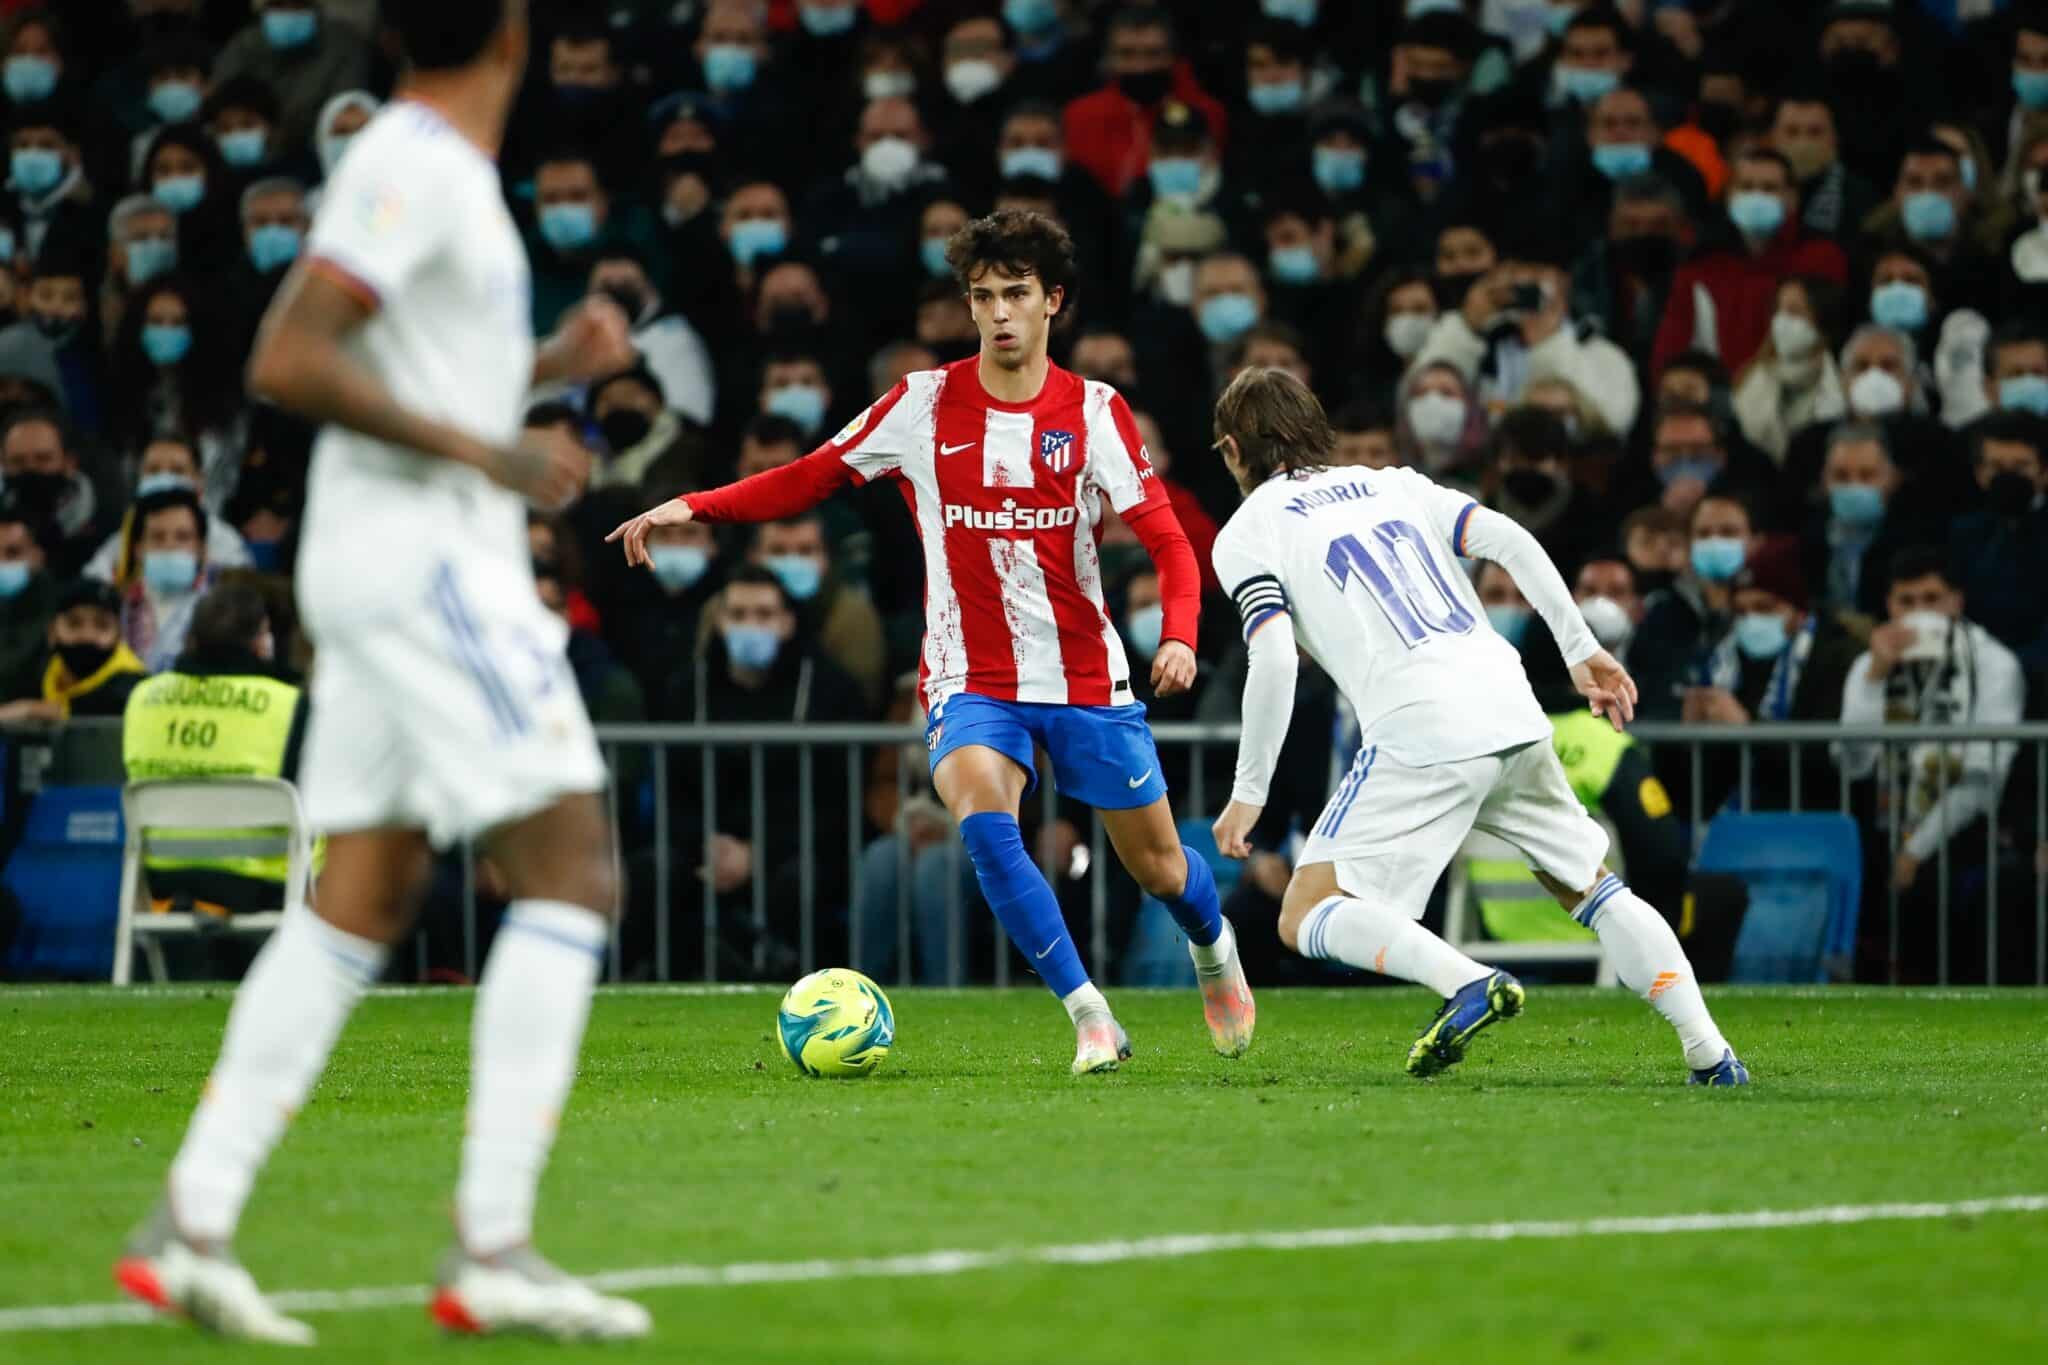 Partido del Real Madrid contra el Atlético de Madrid disputado en el Santiago Bernabéu correspondiente a LaLiga